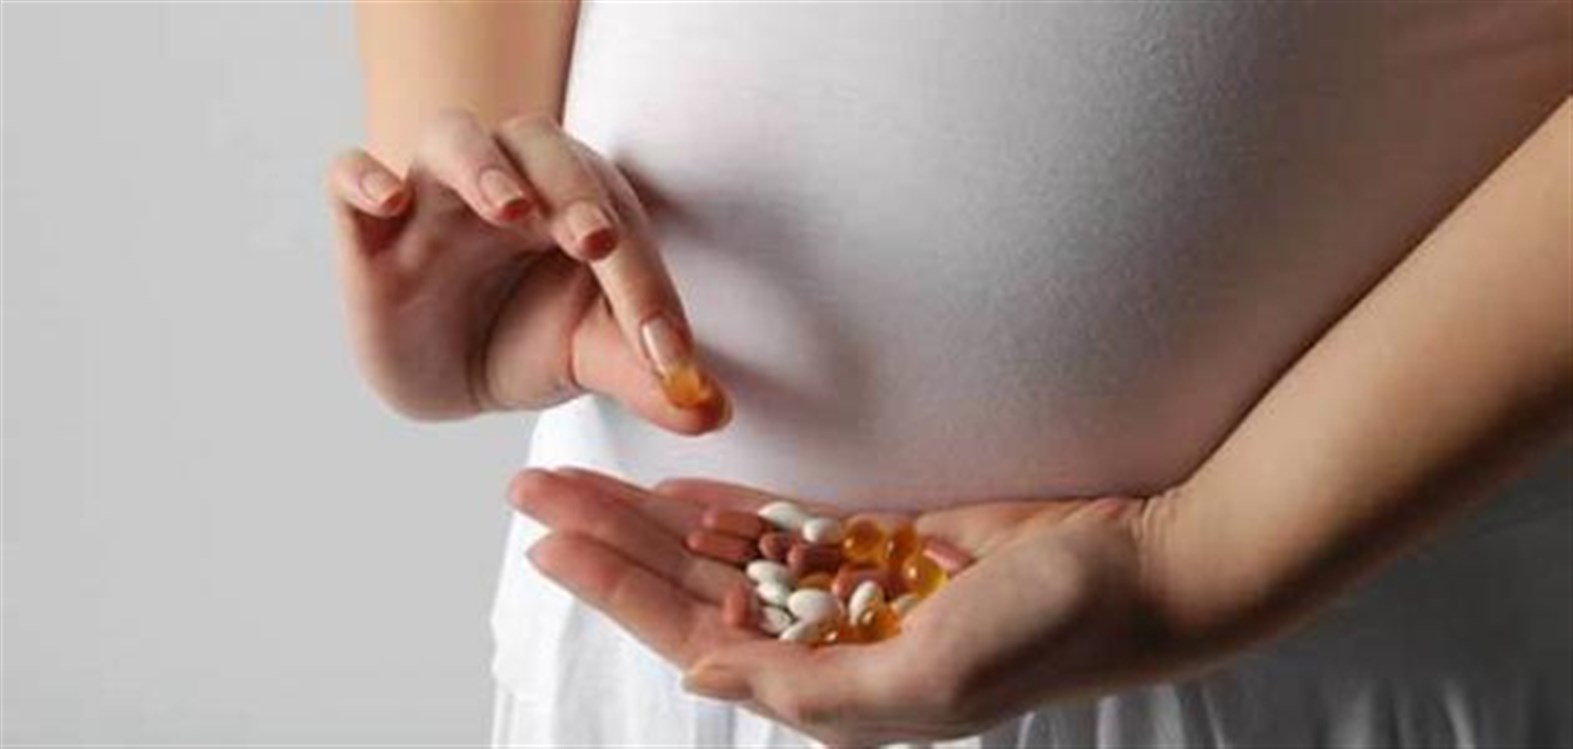 نقص فيتامين ب عند الحامل